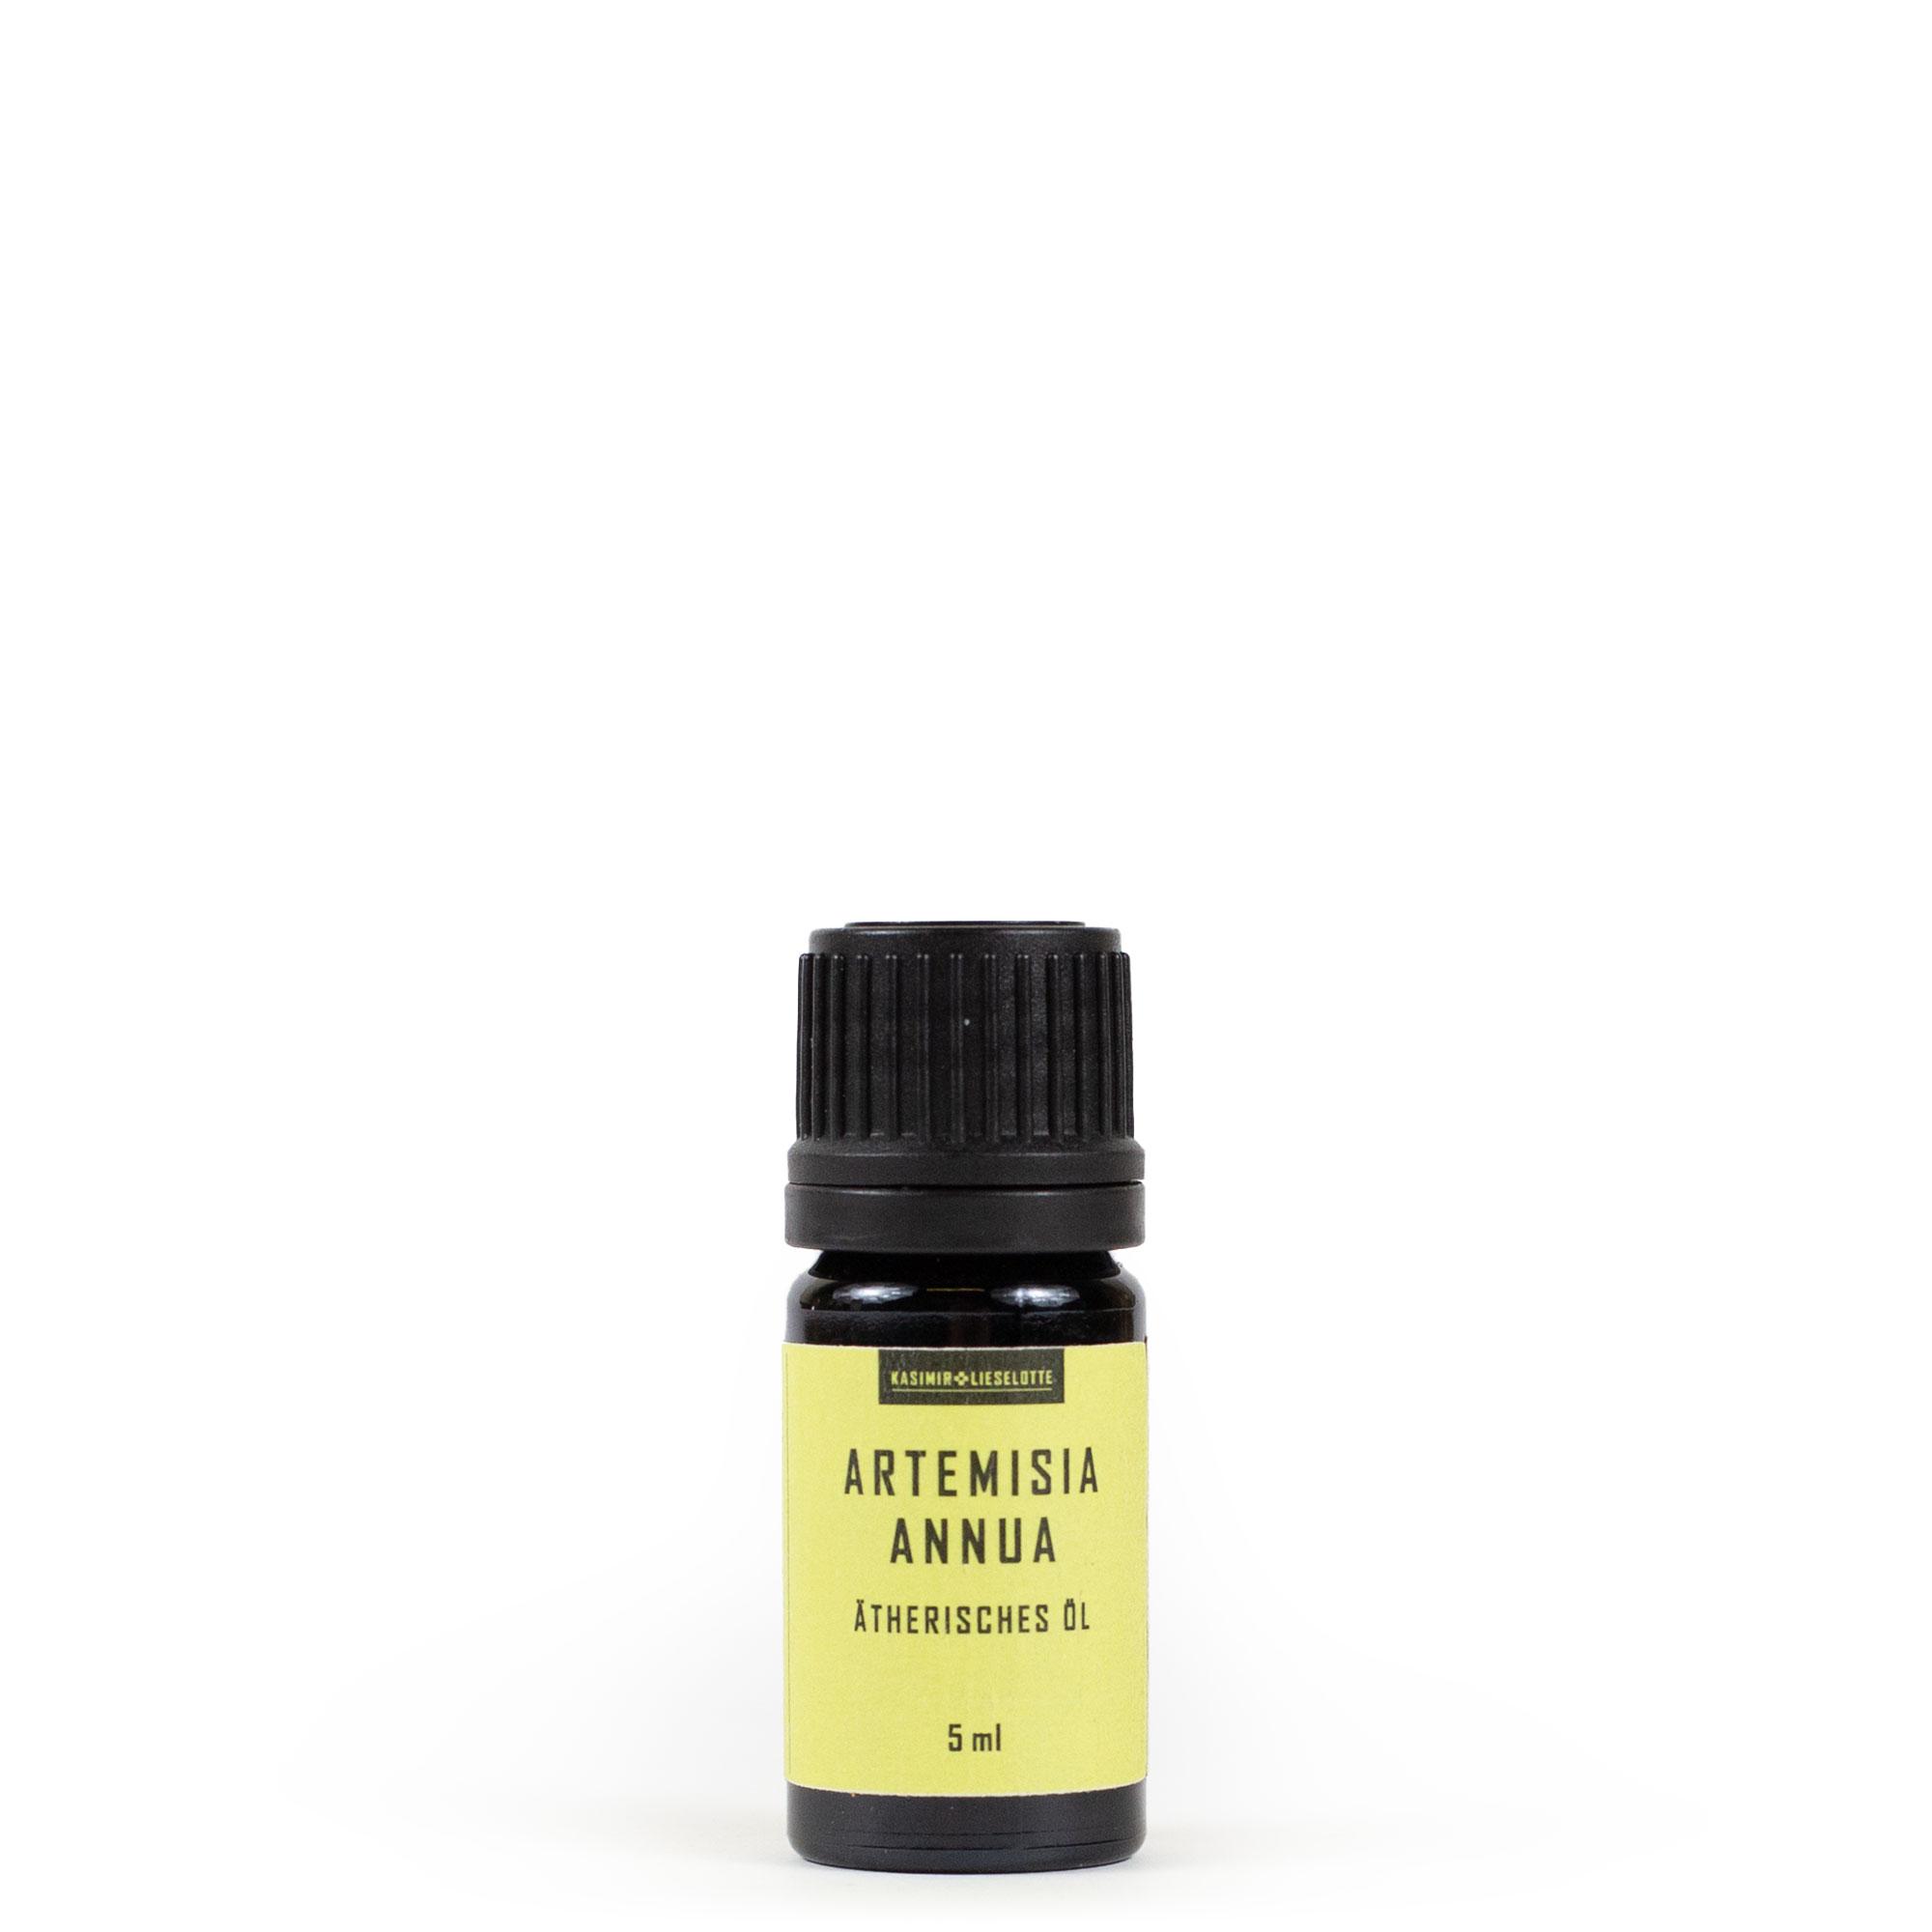 Artemisia annua ätherisches Öl 5 ml